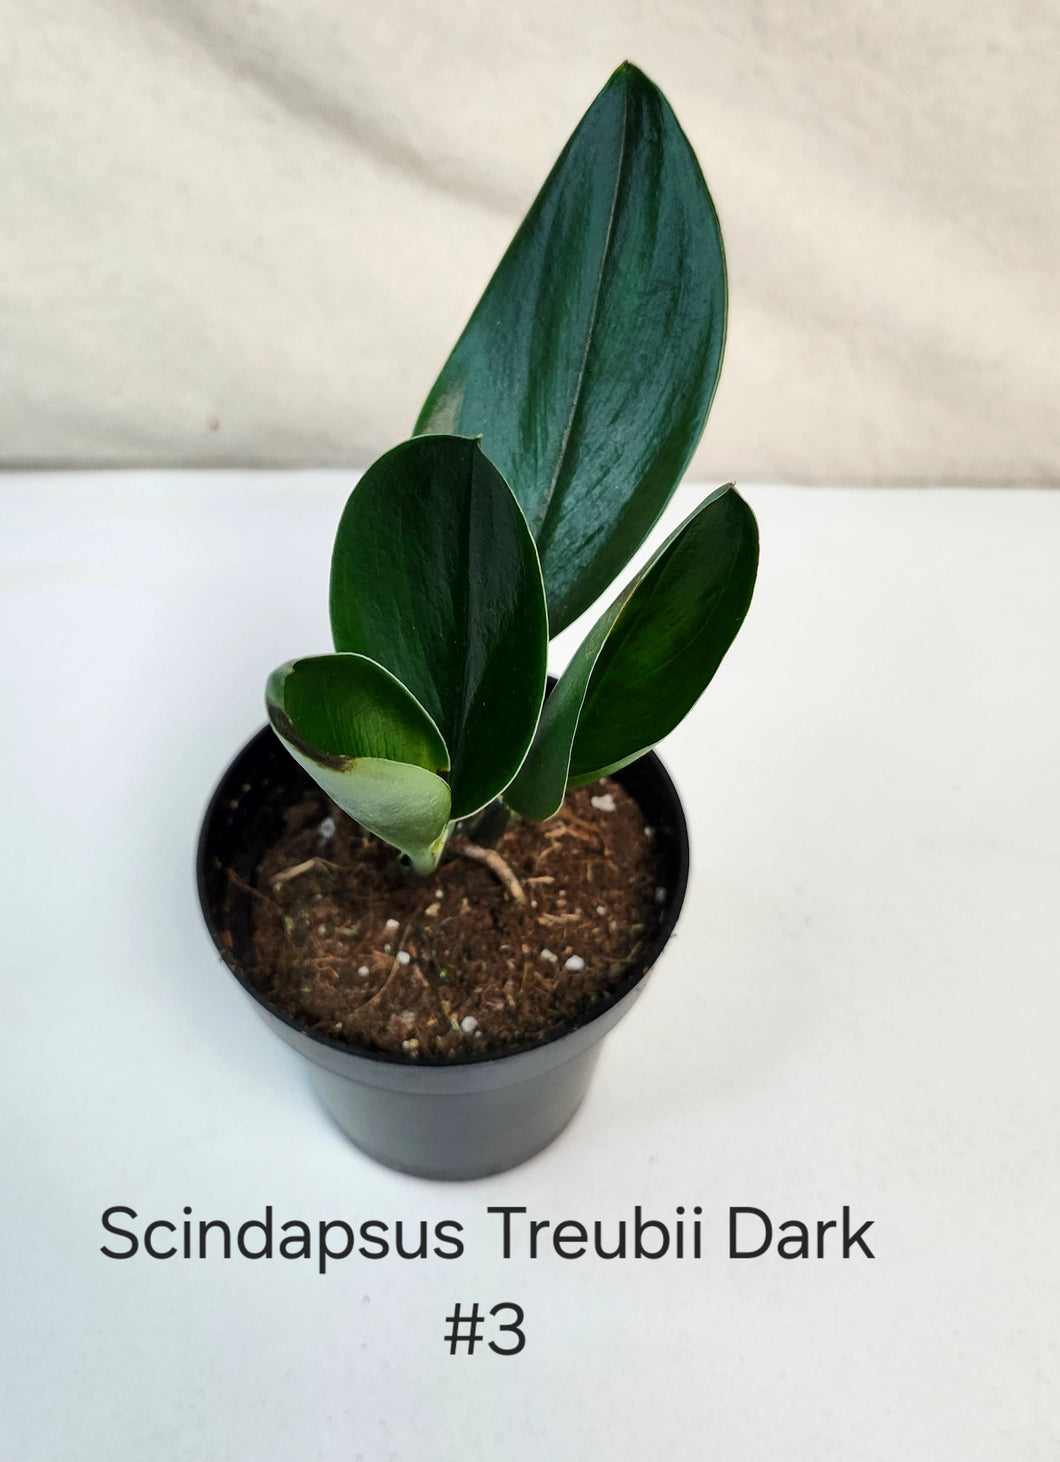 Scindapsus Treubii Dark Form #3